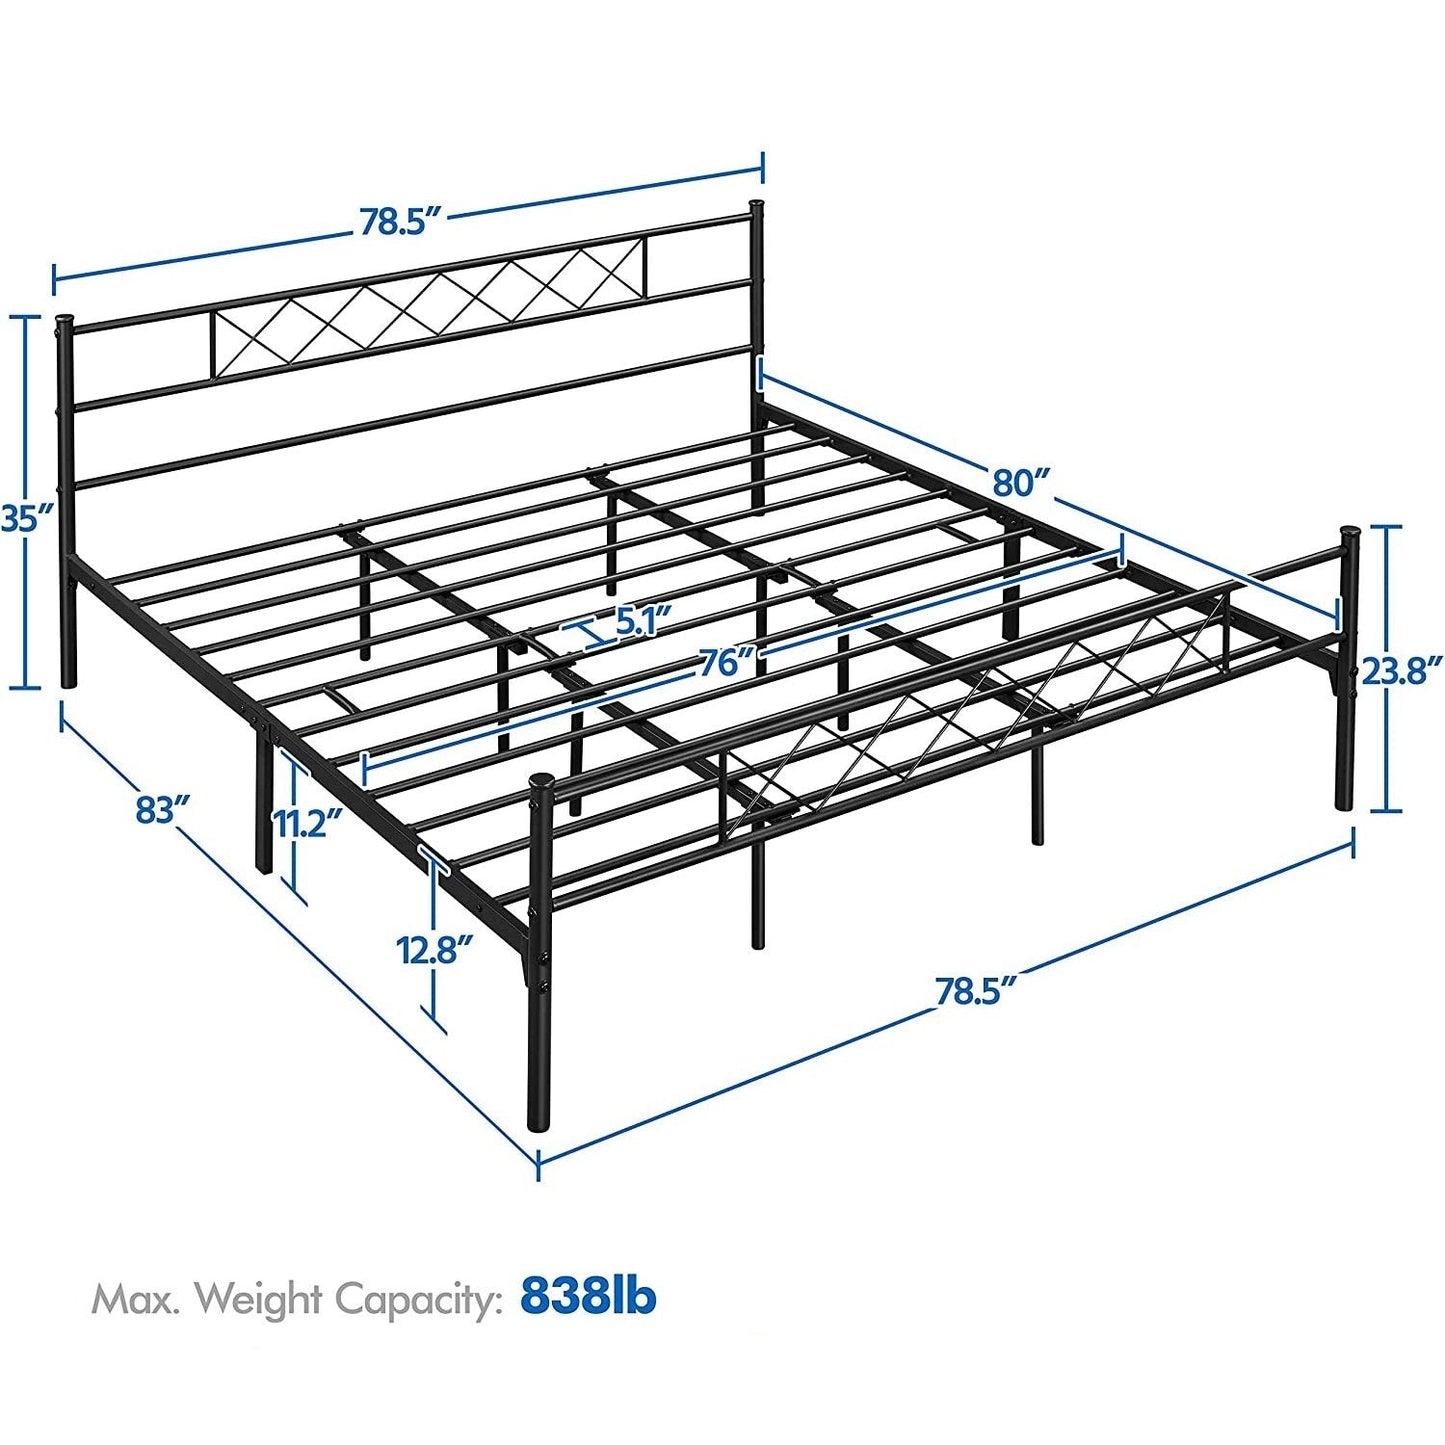 Bedroom > Bed Frames > Platform Beds - King Size Traditional Powder Coated Slatted Metal Platform Bed